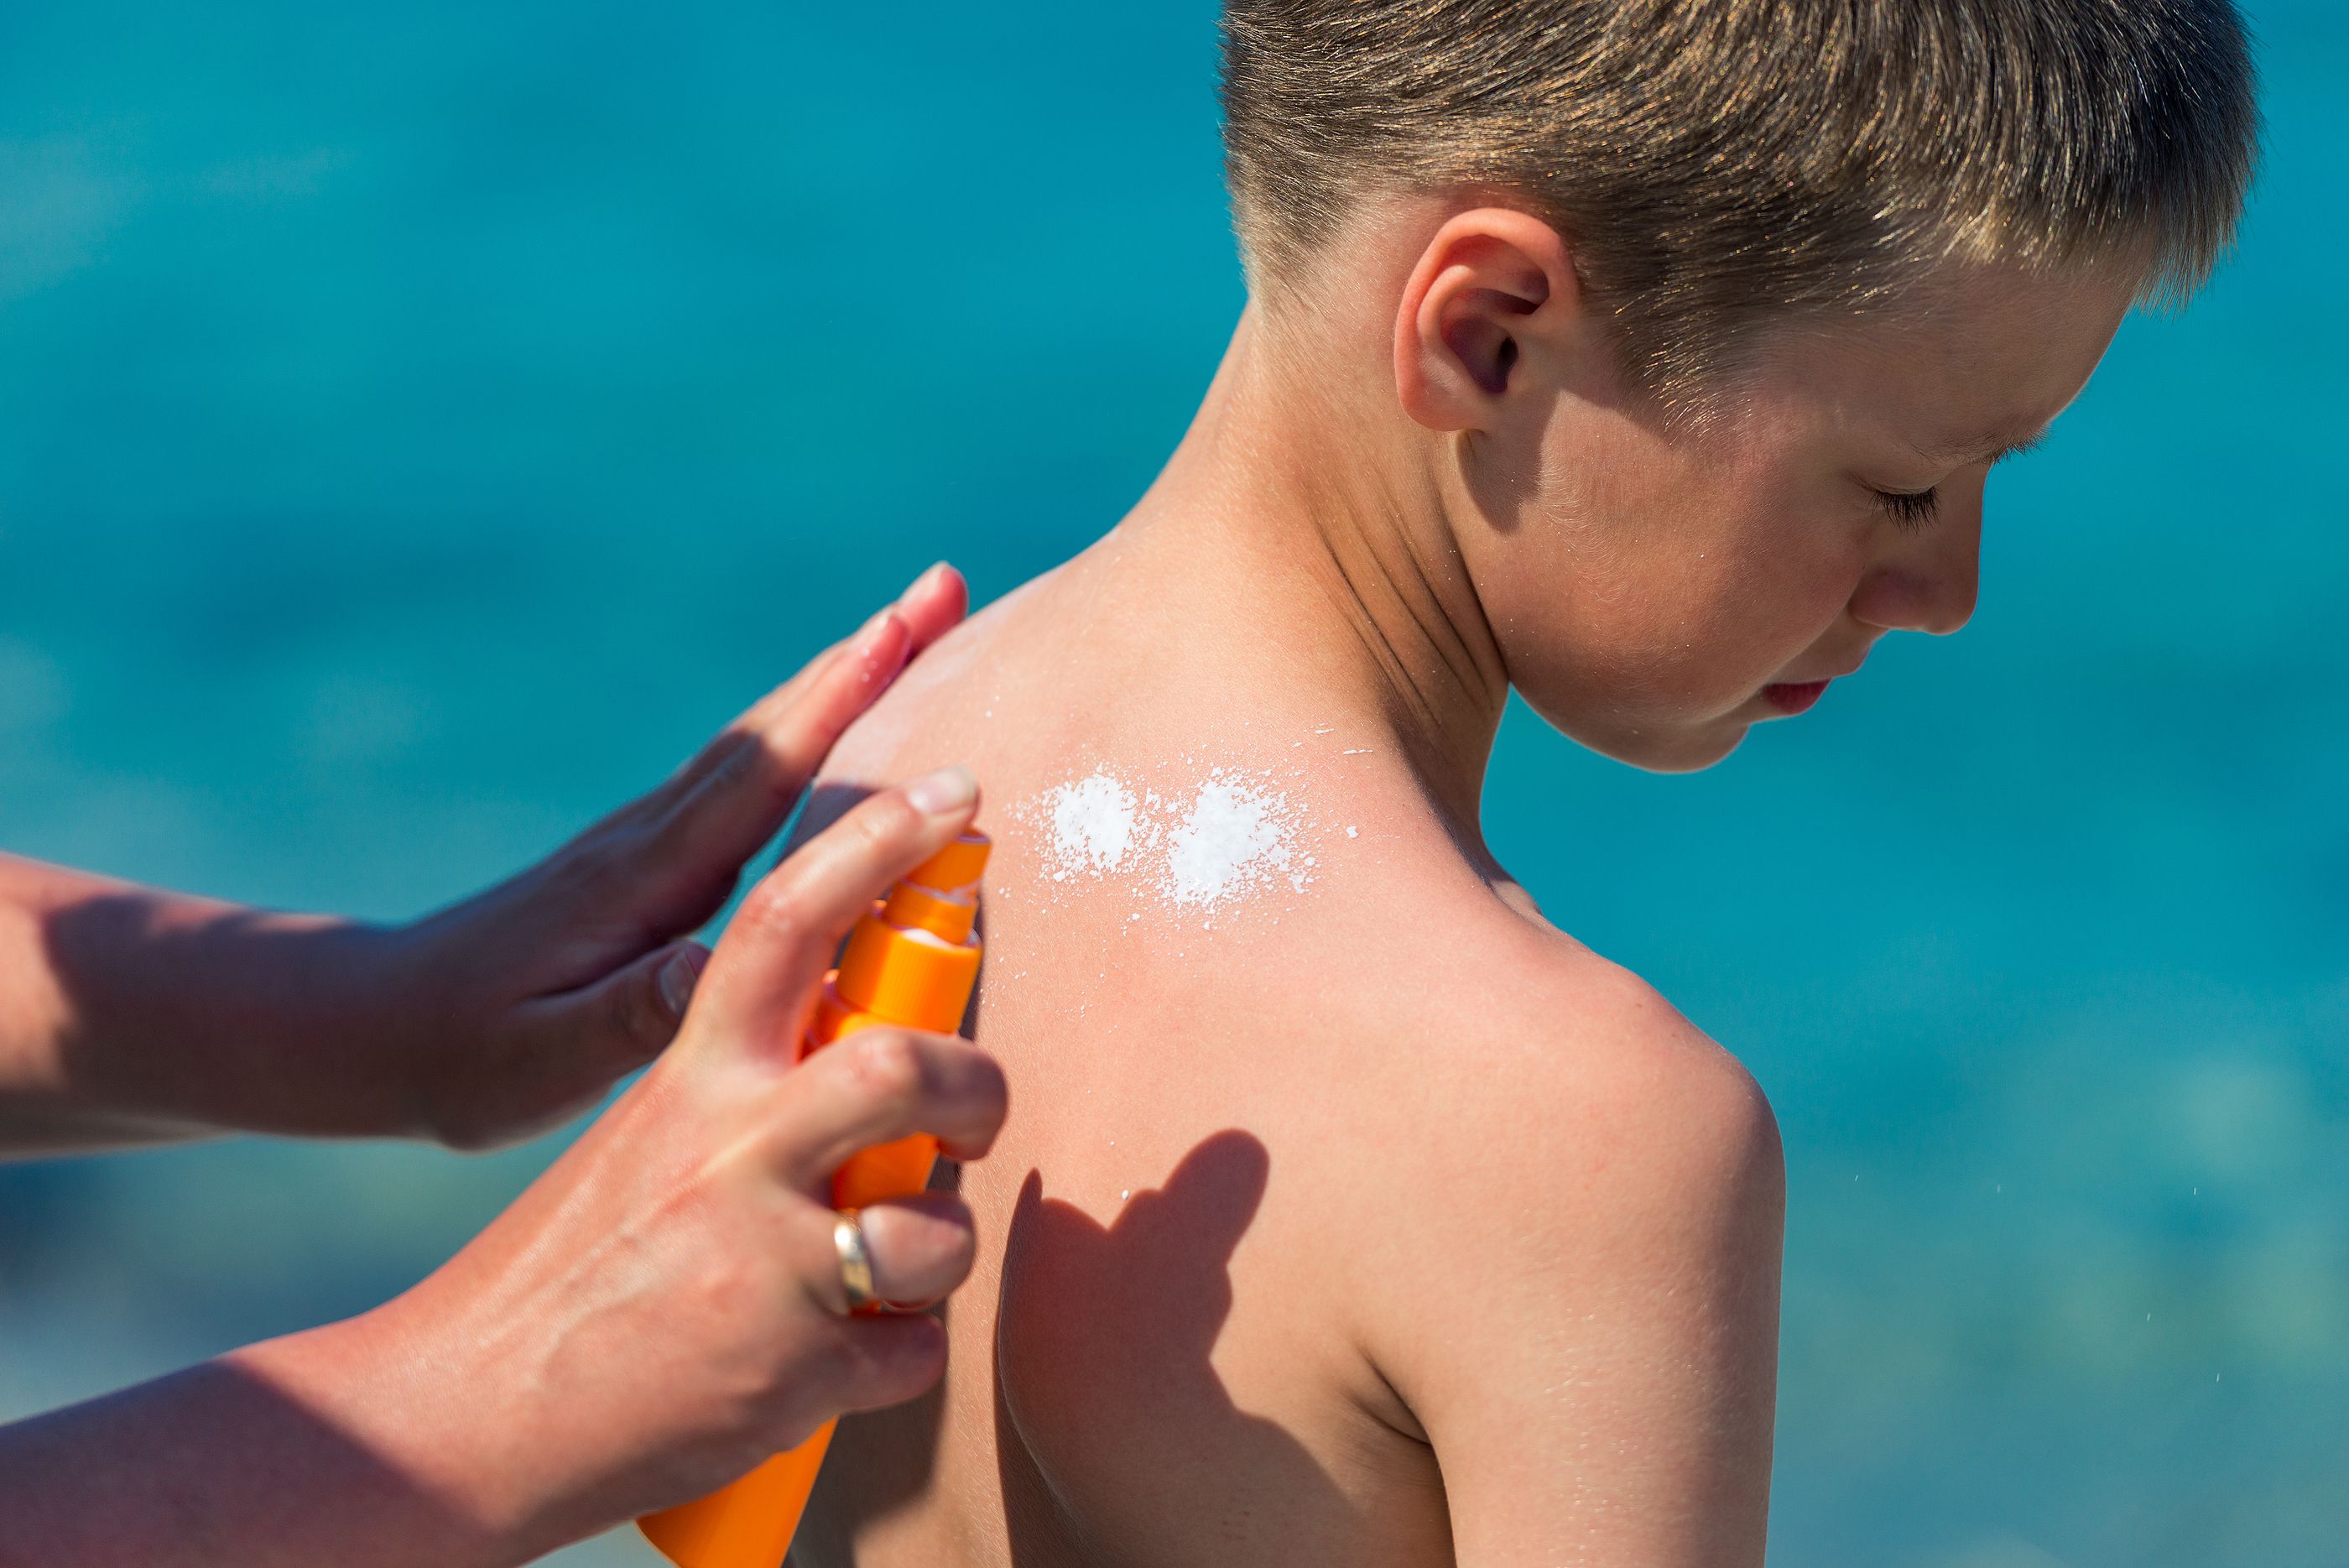 Las quemaduras en niños multiplican el riesgo de cáncer de piel de adultos